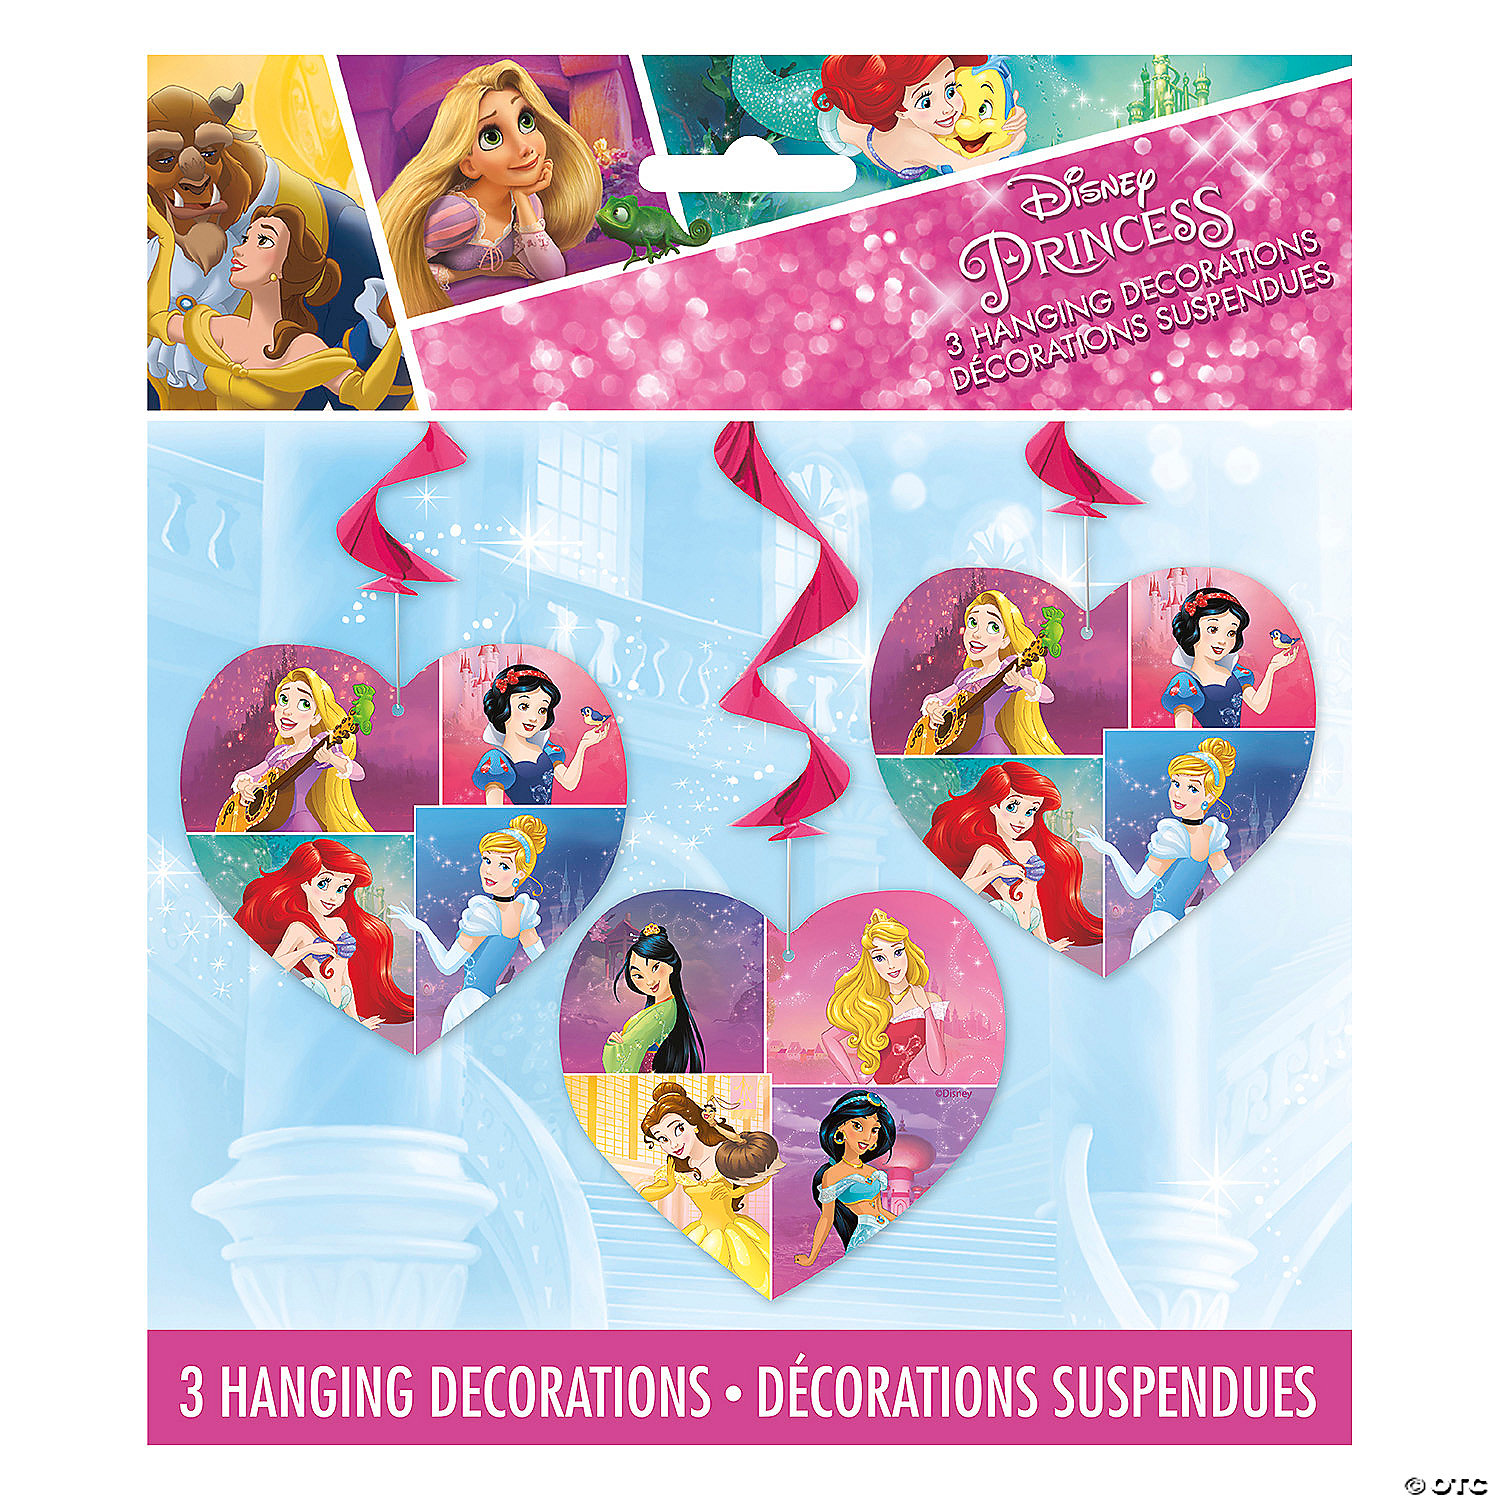 Cinderella Party SuppliesHanging Cinderella Swirl Decoration Pack of 12